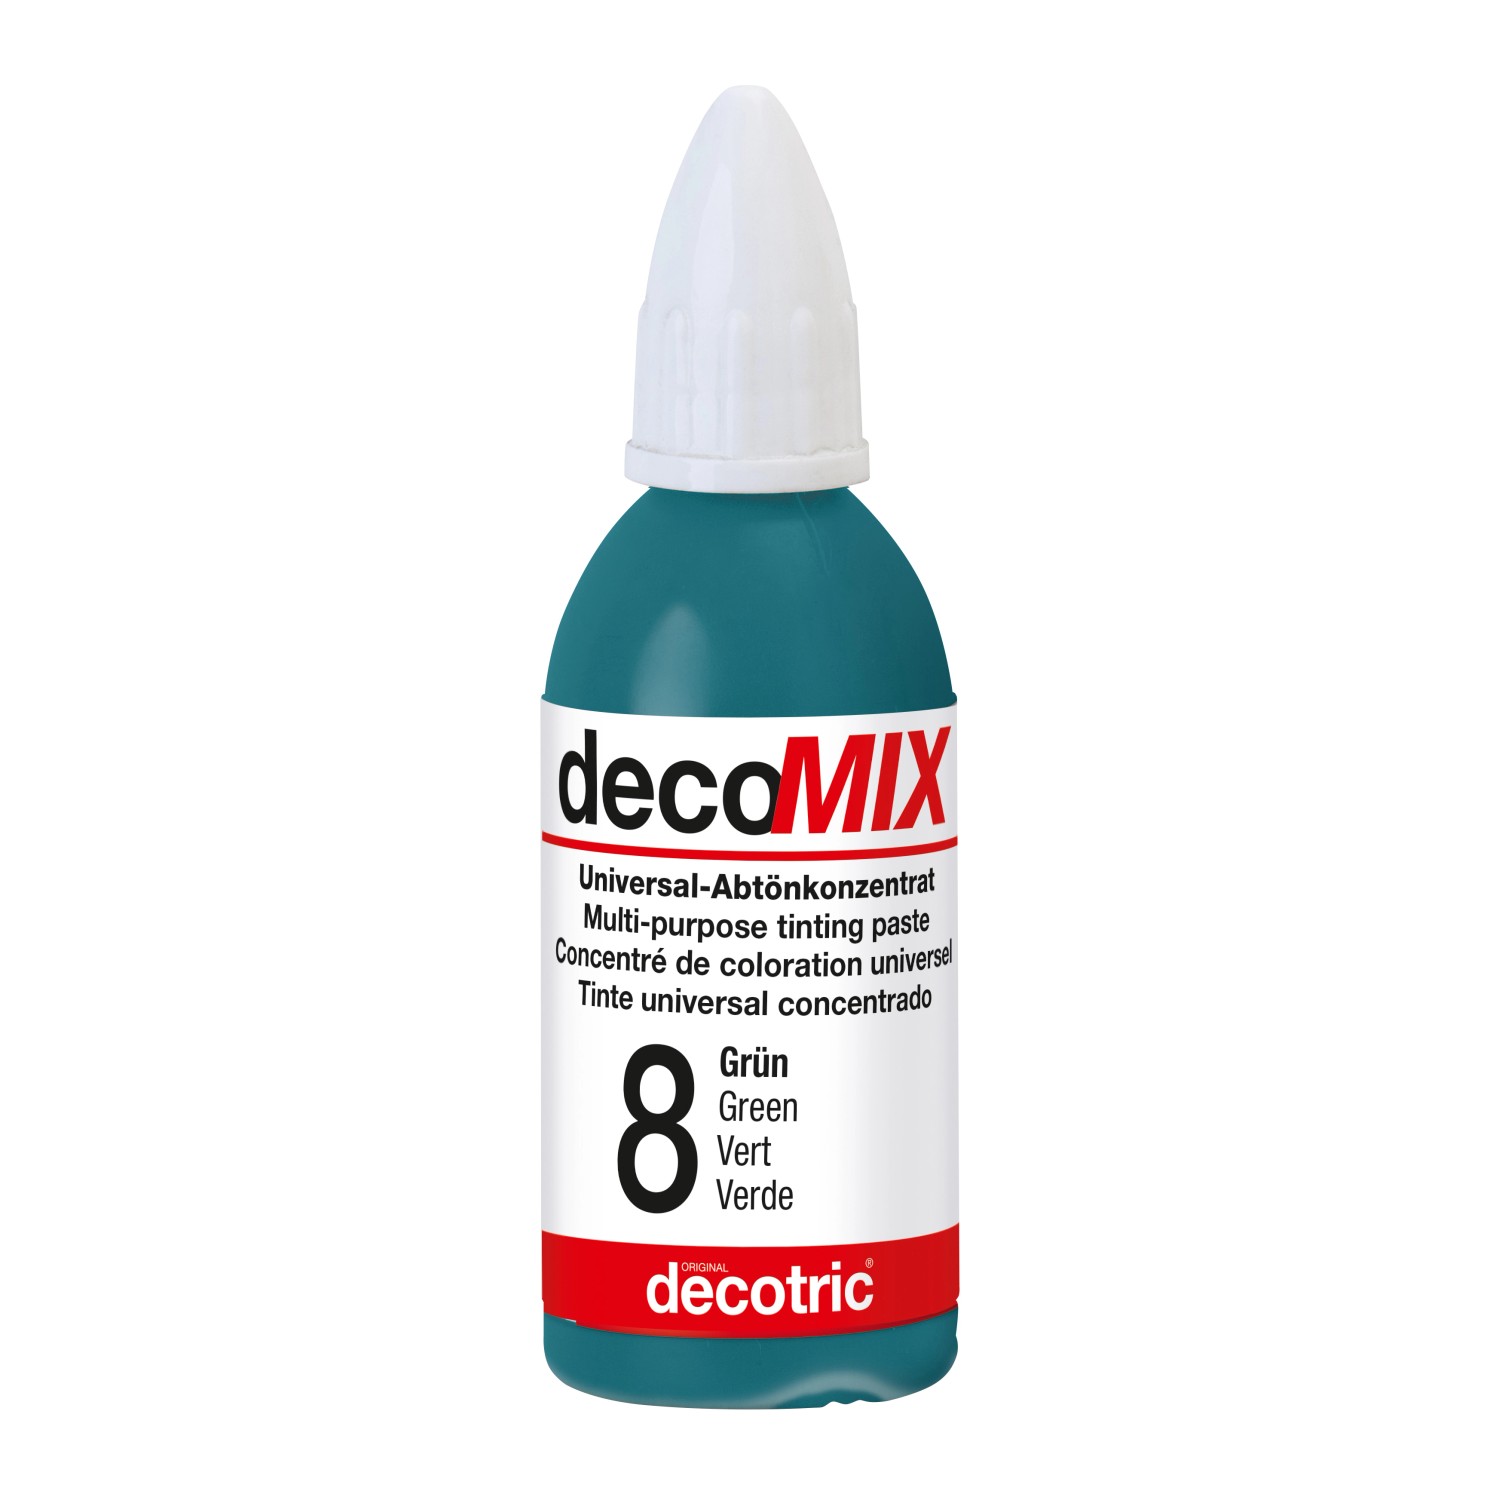 Decomix Universal-Abtönkonzentrat Grün 20 ml von decotric